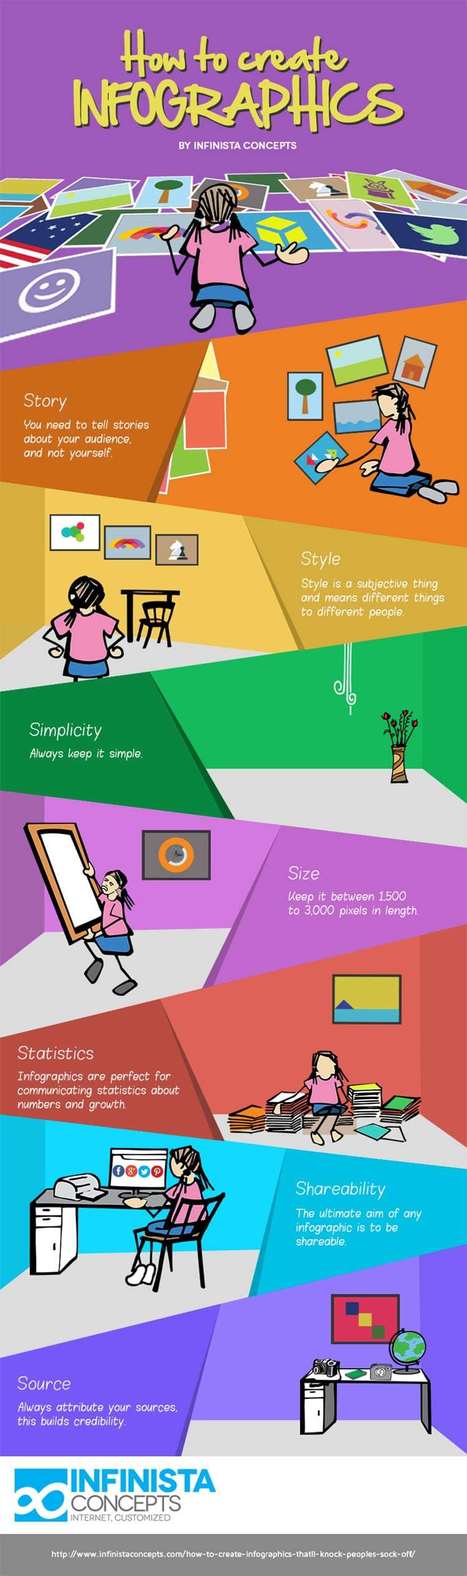 Les 7 #meilleurs #conseils pour créer des #infographies exceptionnelles par @leecrockett | Prospectives et nouveaux enjeux dans l'entreprise | Scoop.it